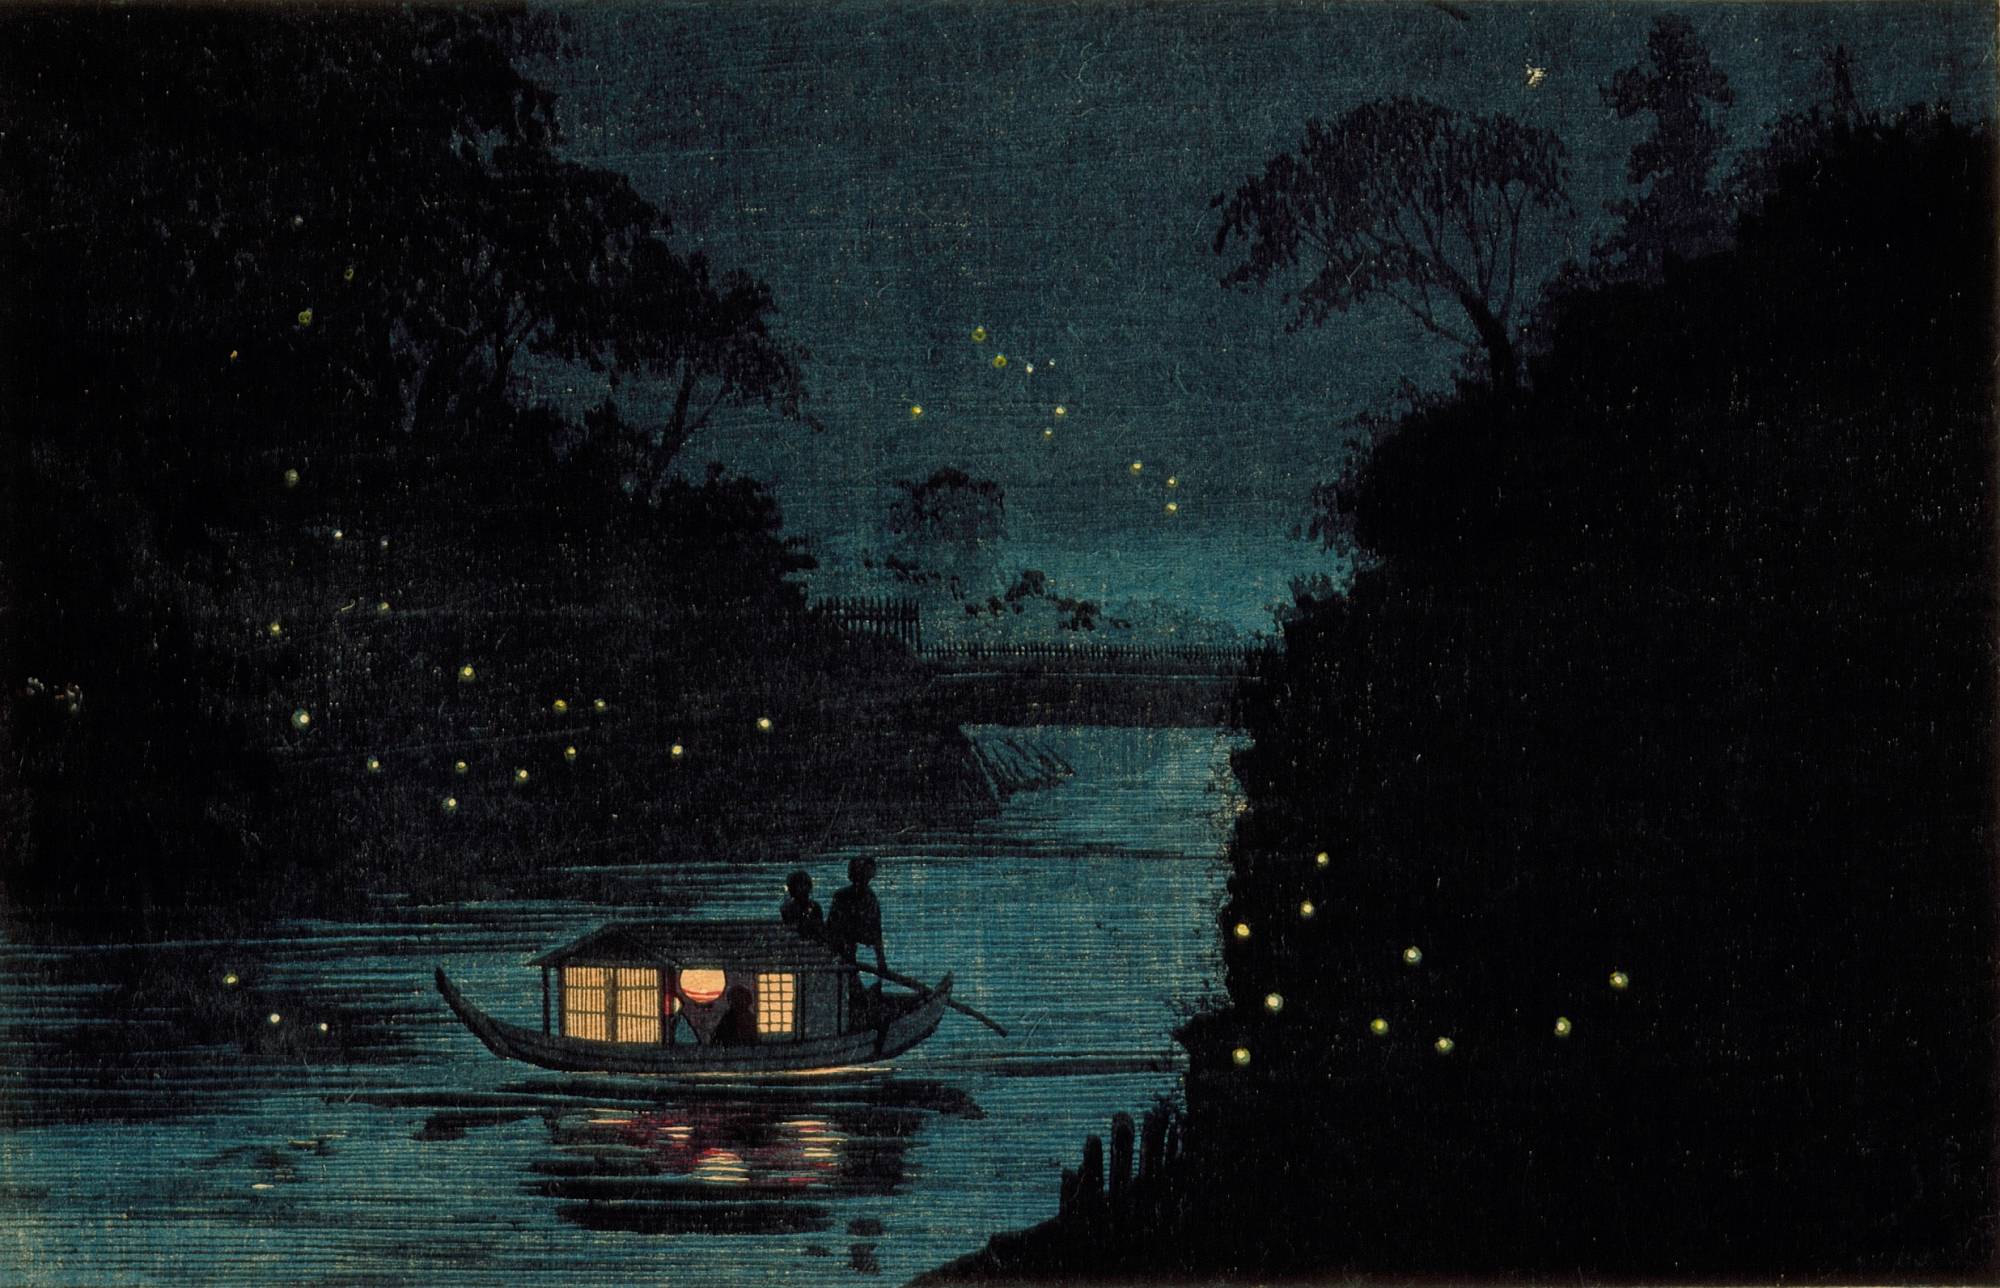 Fireflies at Ochanomizu